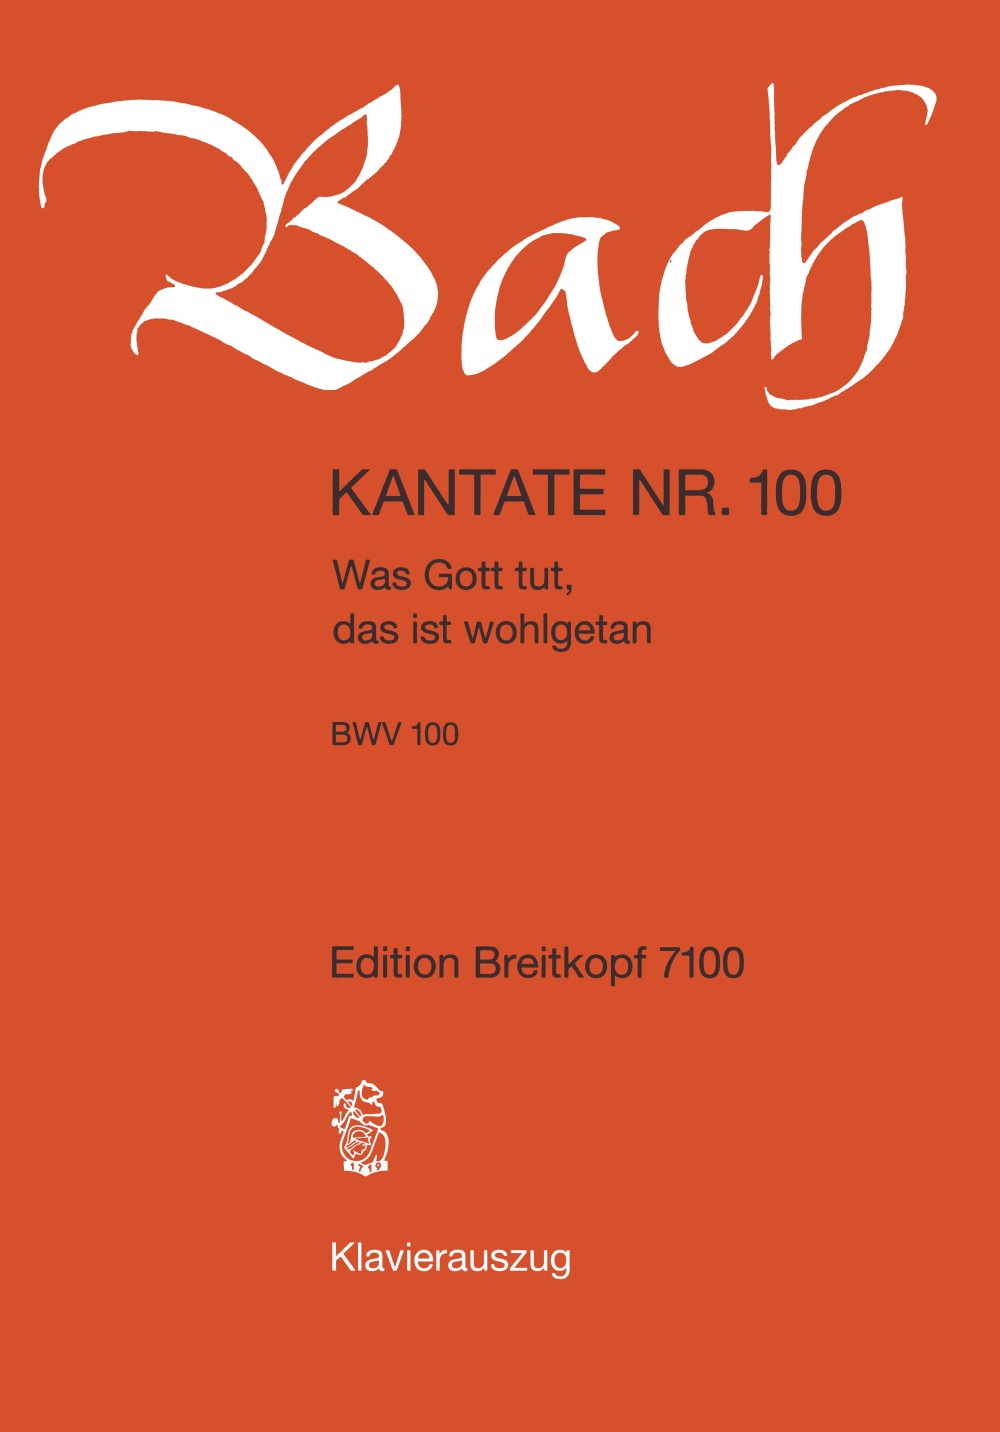 Bach: Was Gott tut, das ist wohlgetan, BWV 100